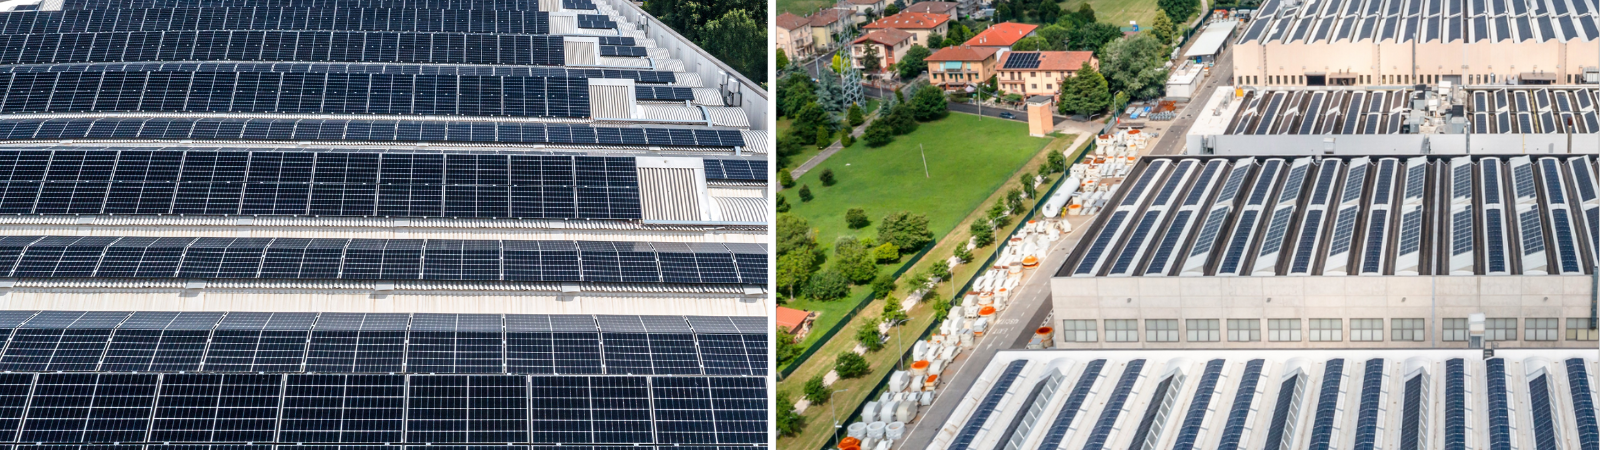 SACMI completa la copertura fotovoltaica del sito di Imola